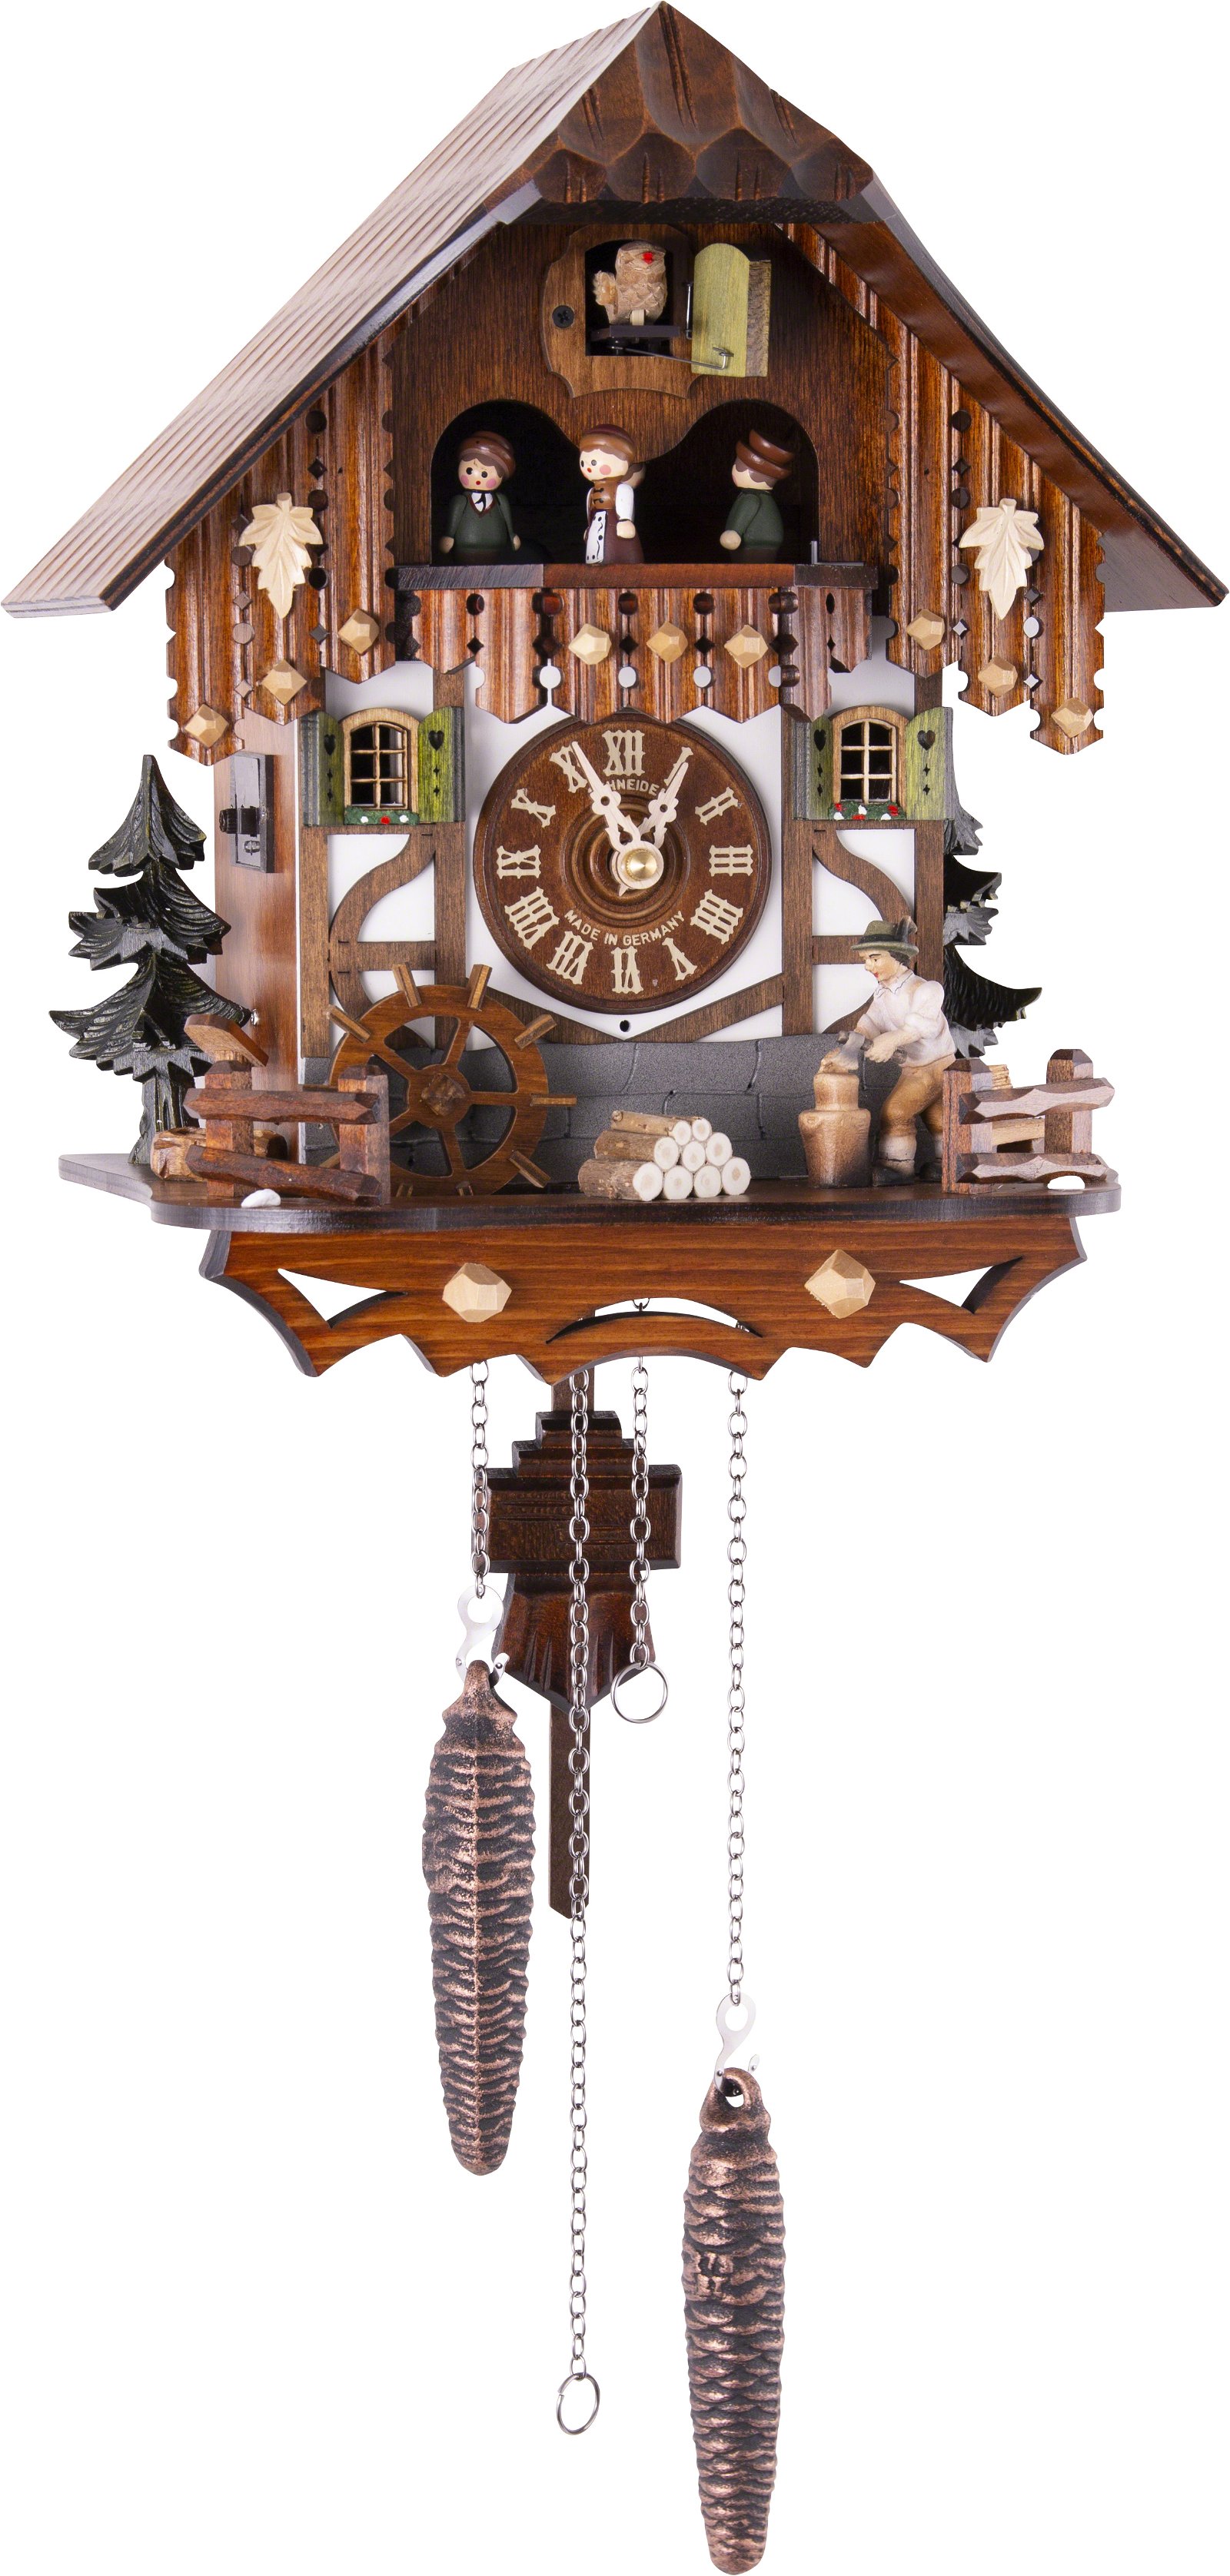 Kuckucksuhr Quarz-Uhrwerk Chalet-Stil 33cm von Anton Schneider